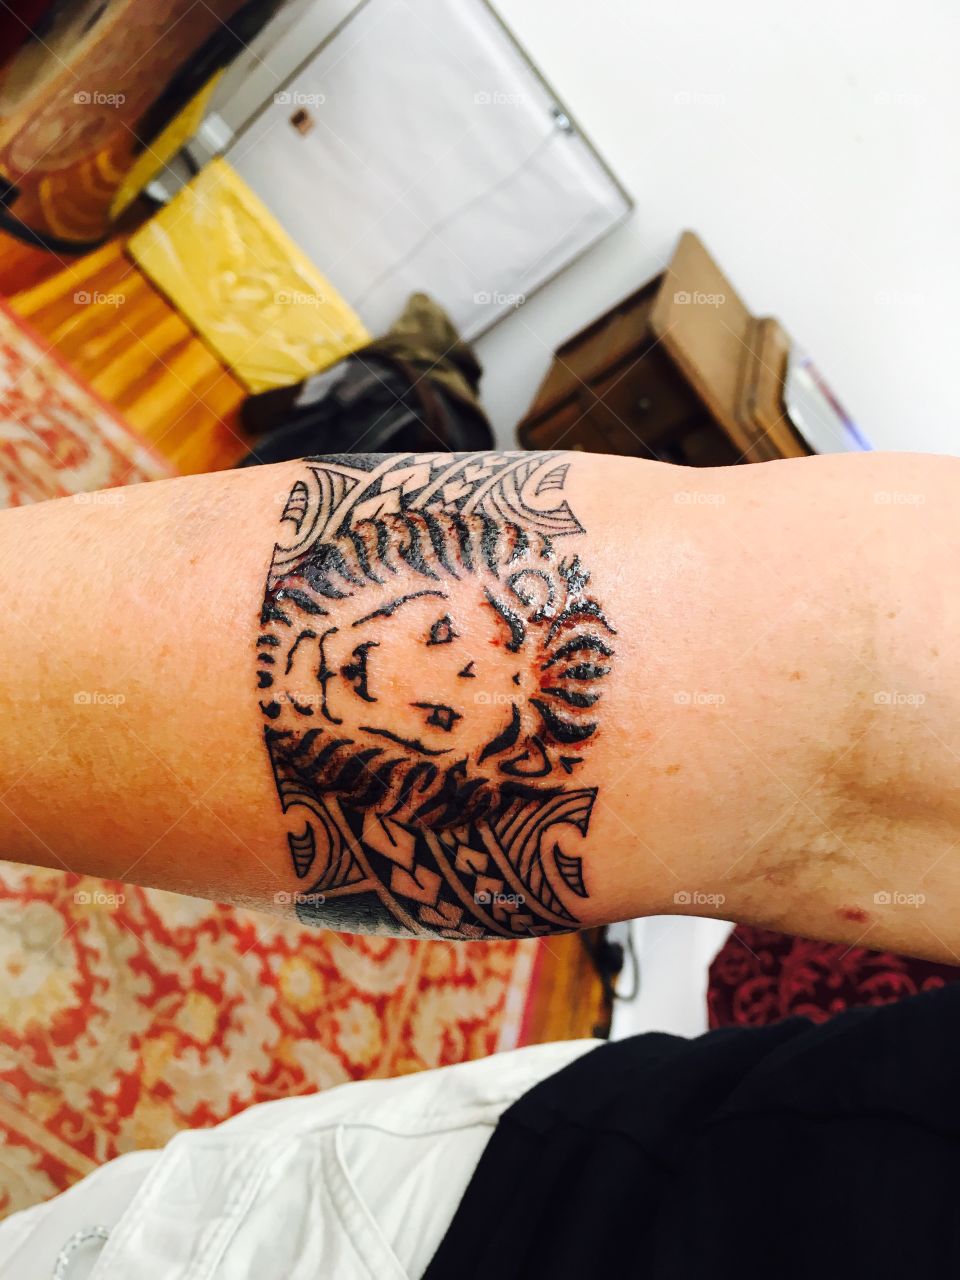 Lion armband tattoo